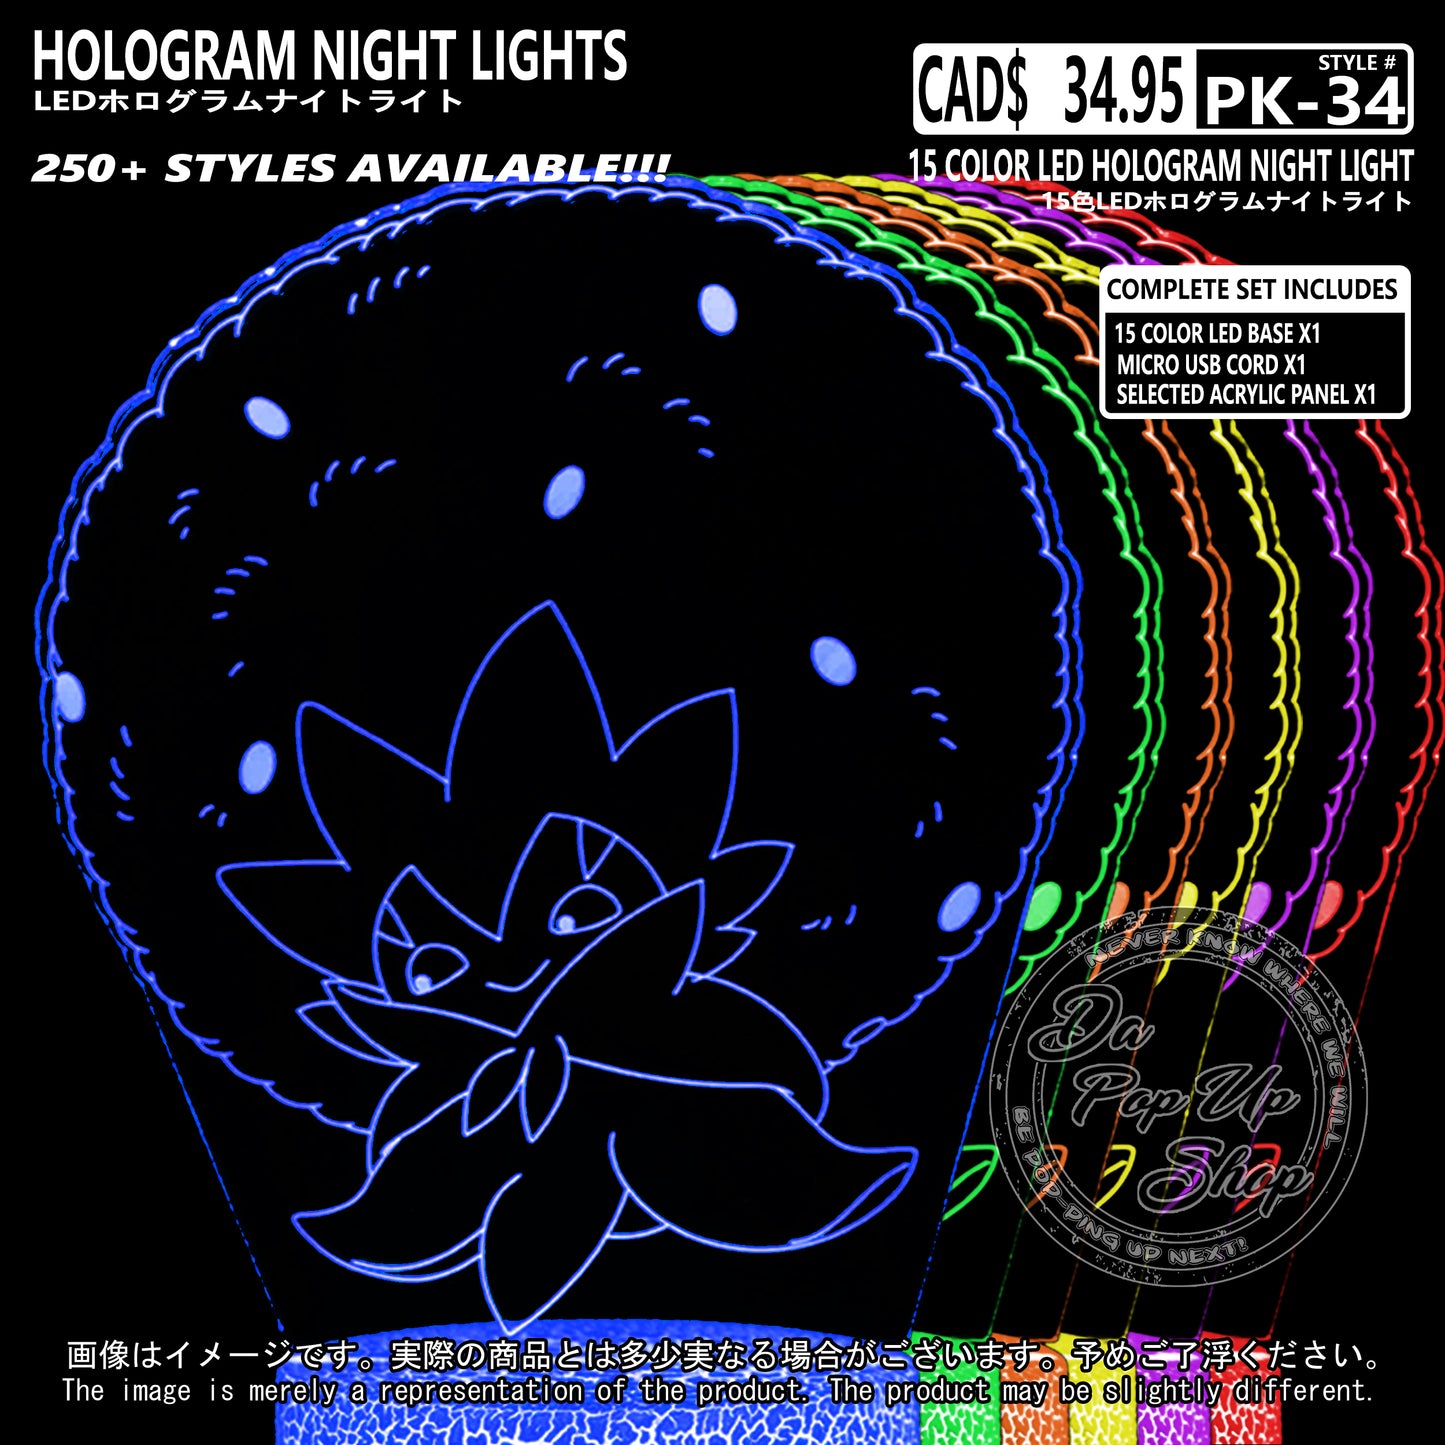 (PKM-34) ELDEGOSS Pokemon Hologram LED Night Light